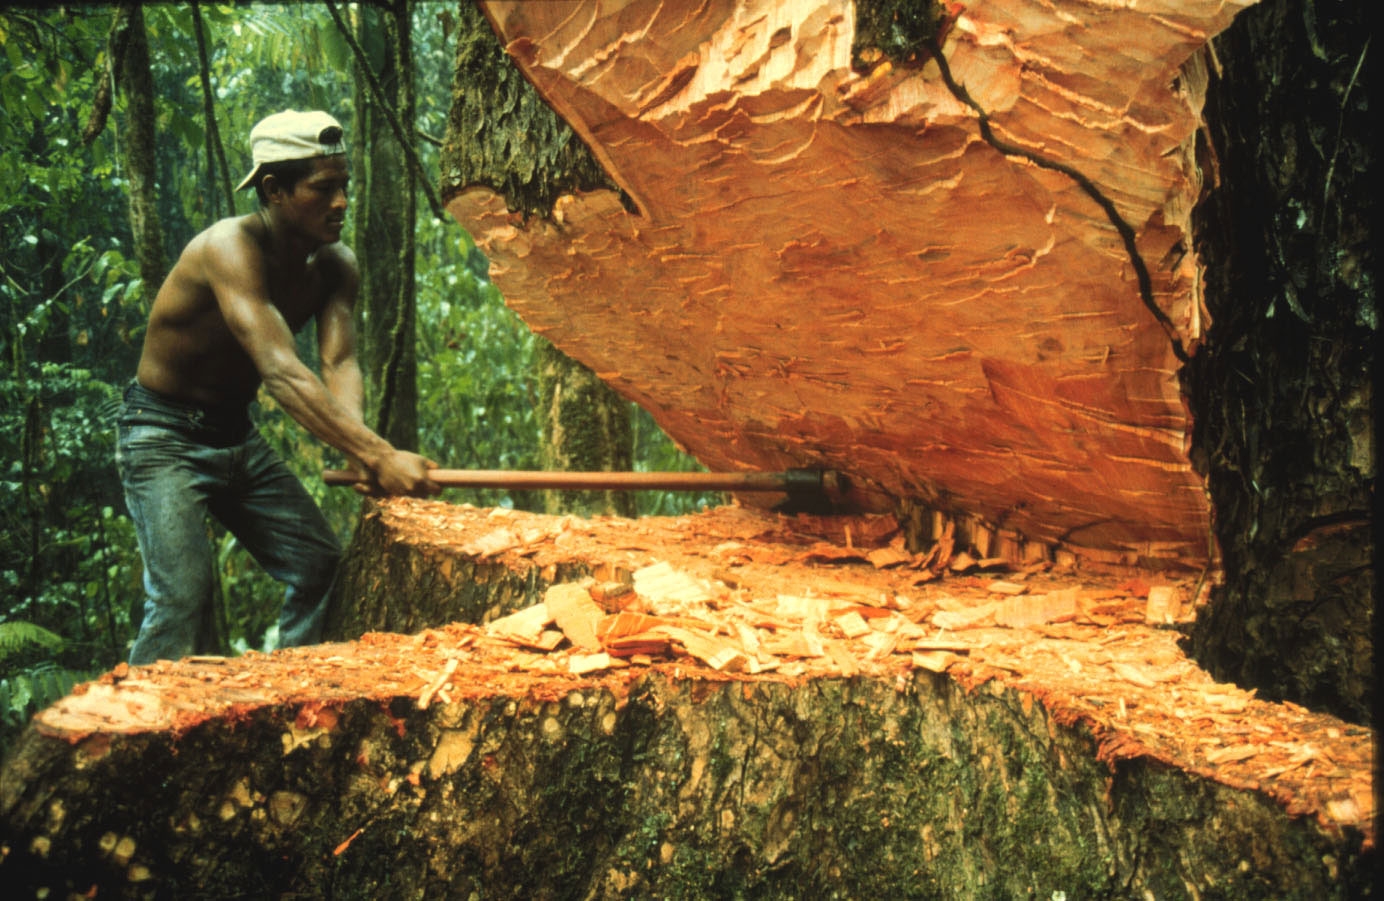 Informe PuntoEdu: La tala ilegal y la deforestación de la Amazonía peruana  - PuntoEdu PUCP